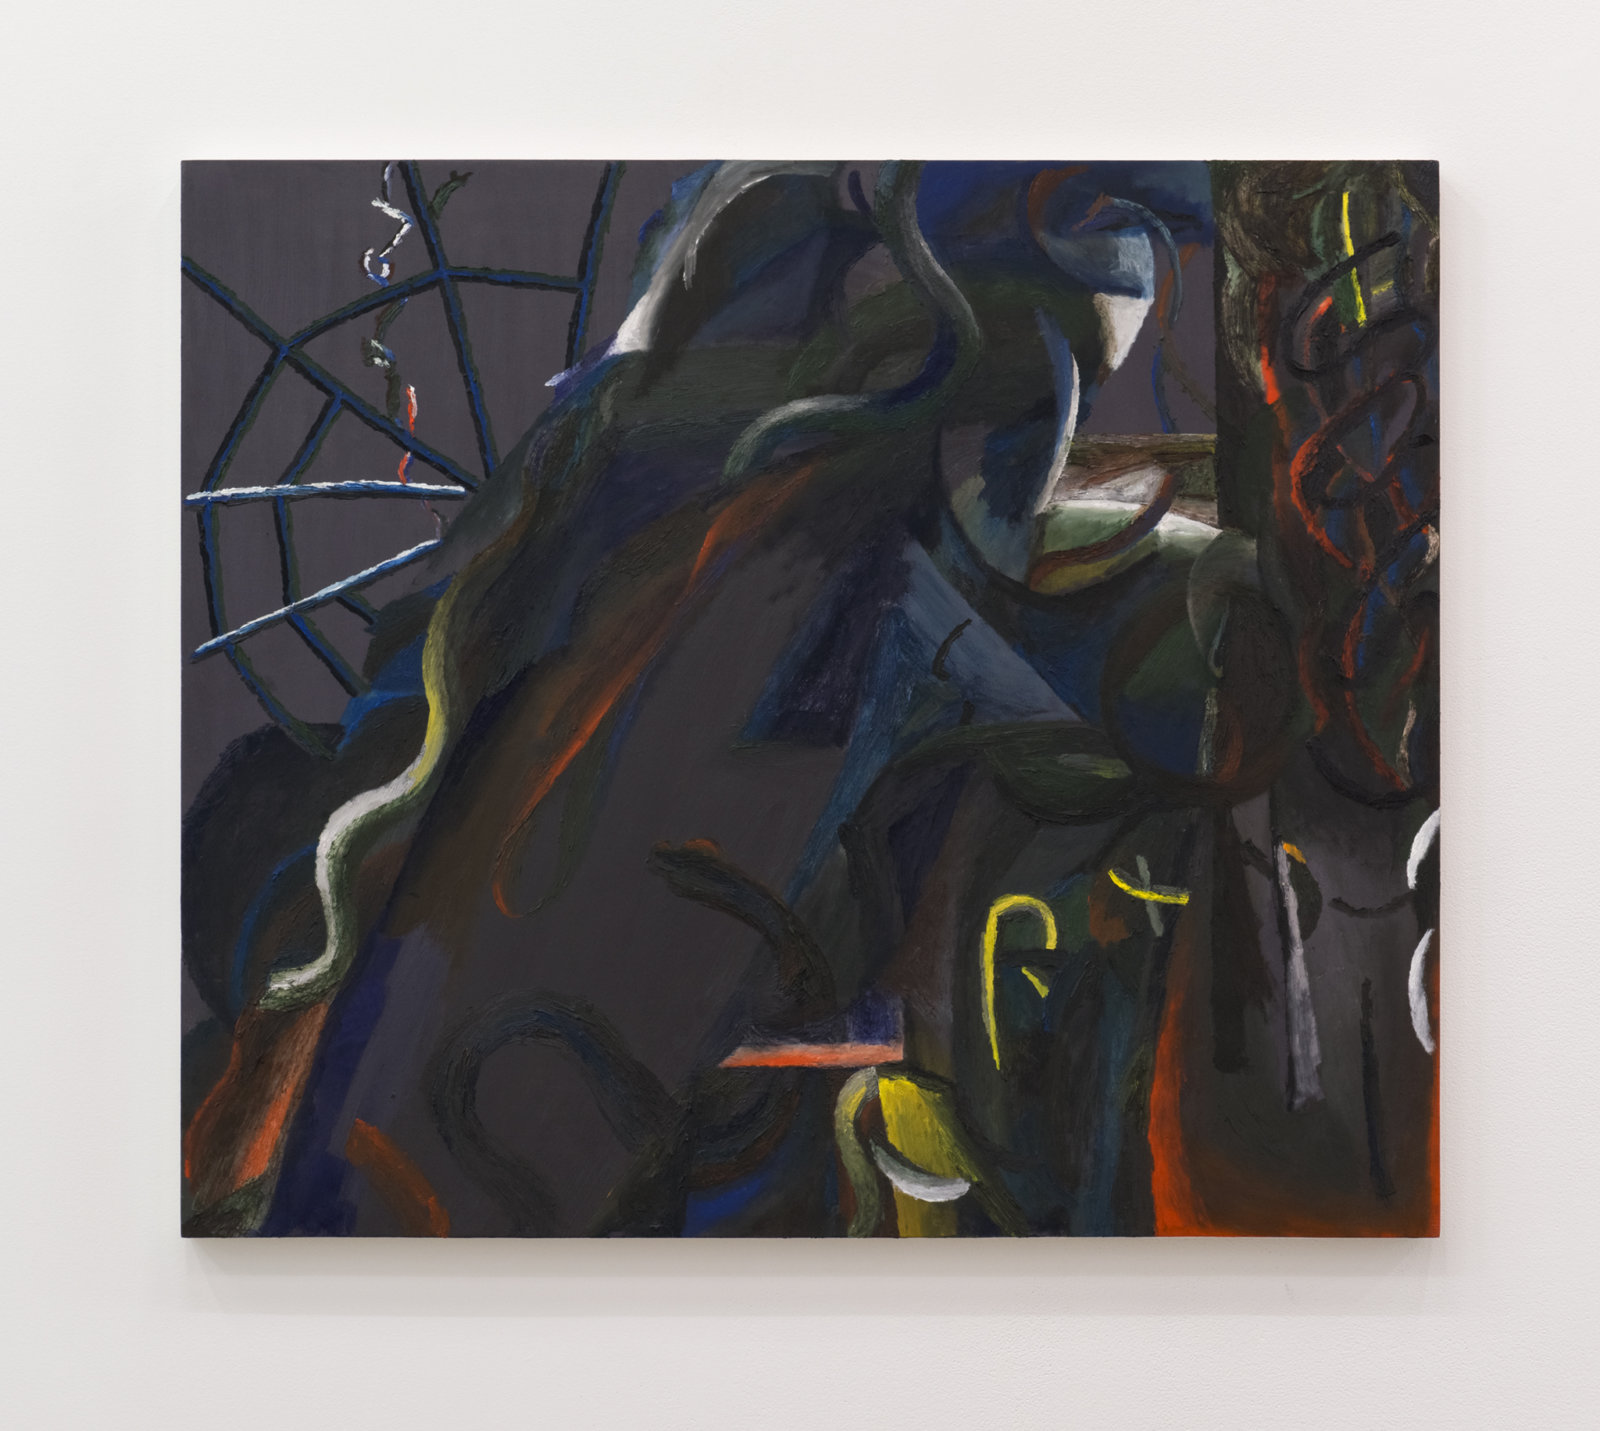 Rebecca Brewer, La Bafana, 2015–2016, oil on muslin on panel, 36 x 42 in. (92 x 107 cm)